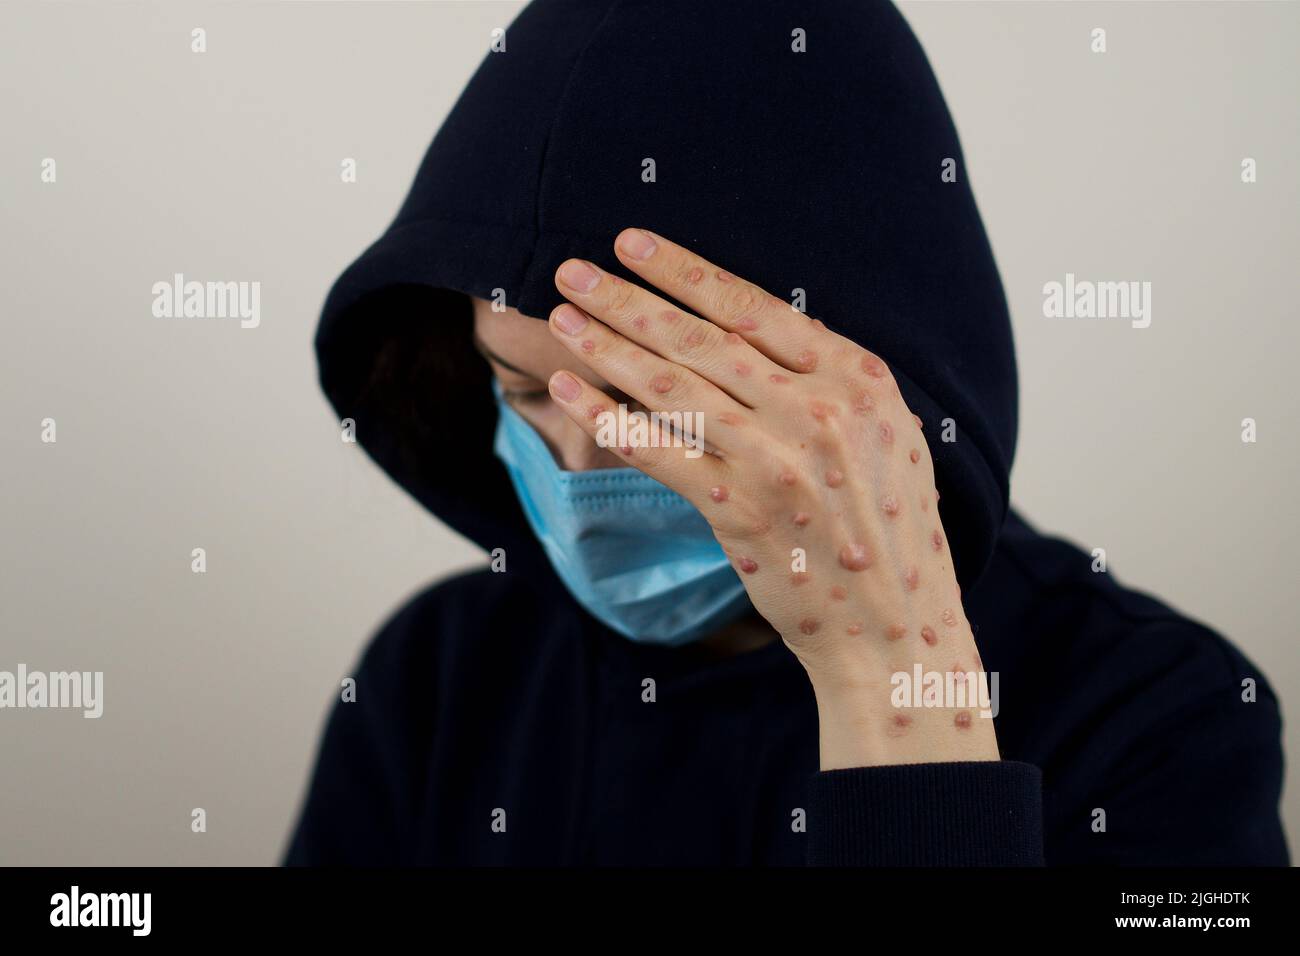 Eine Frau, die sich mit einem Blasenausschlag infiziert hat und ihr Gesicht versteckt Stockfoto